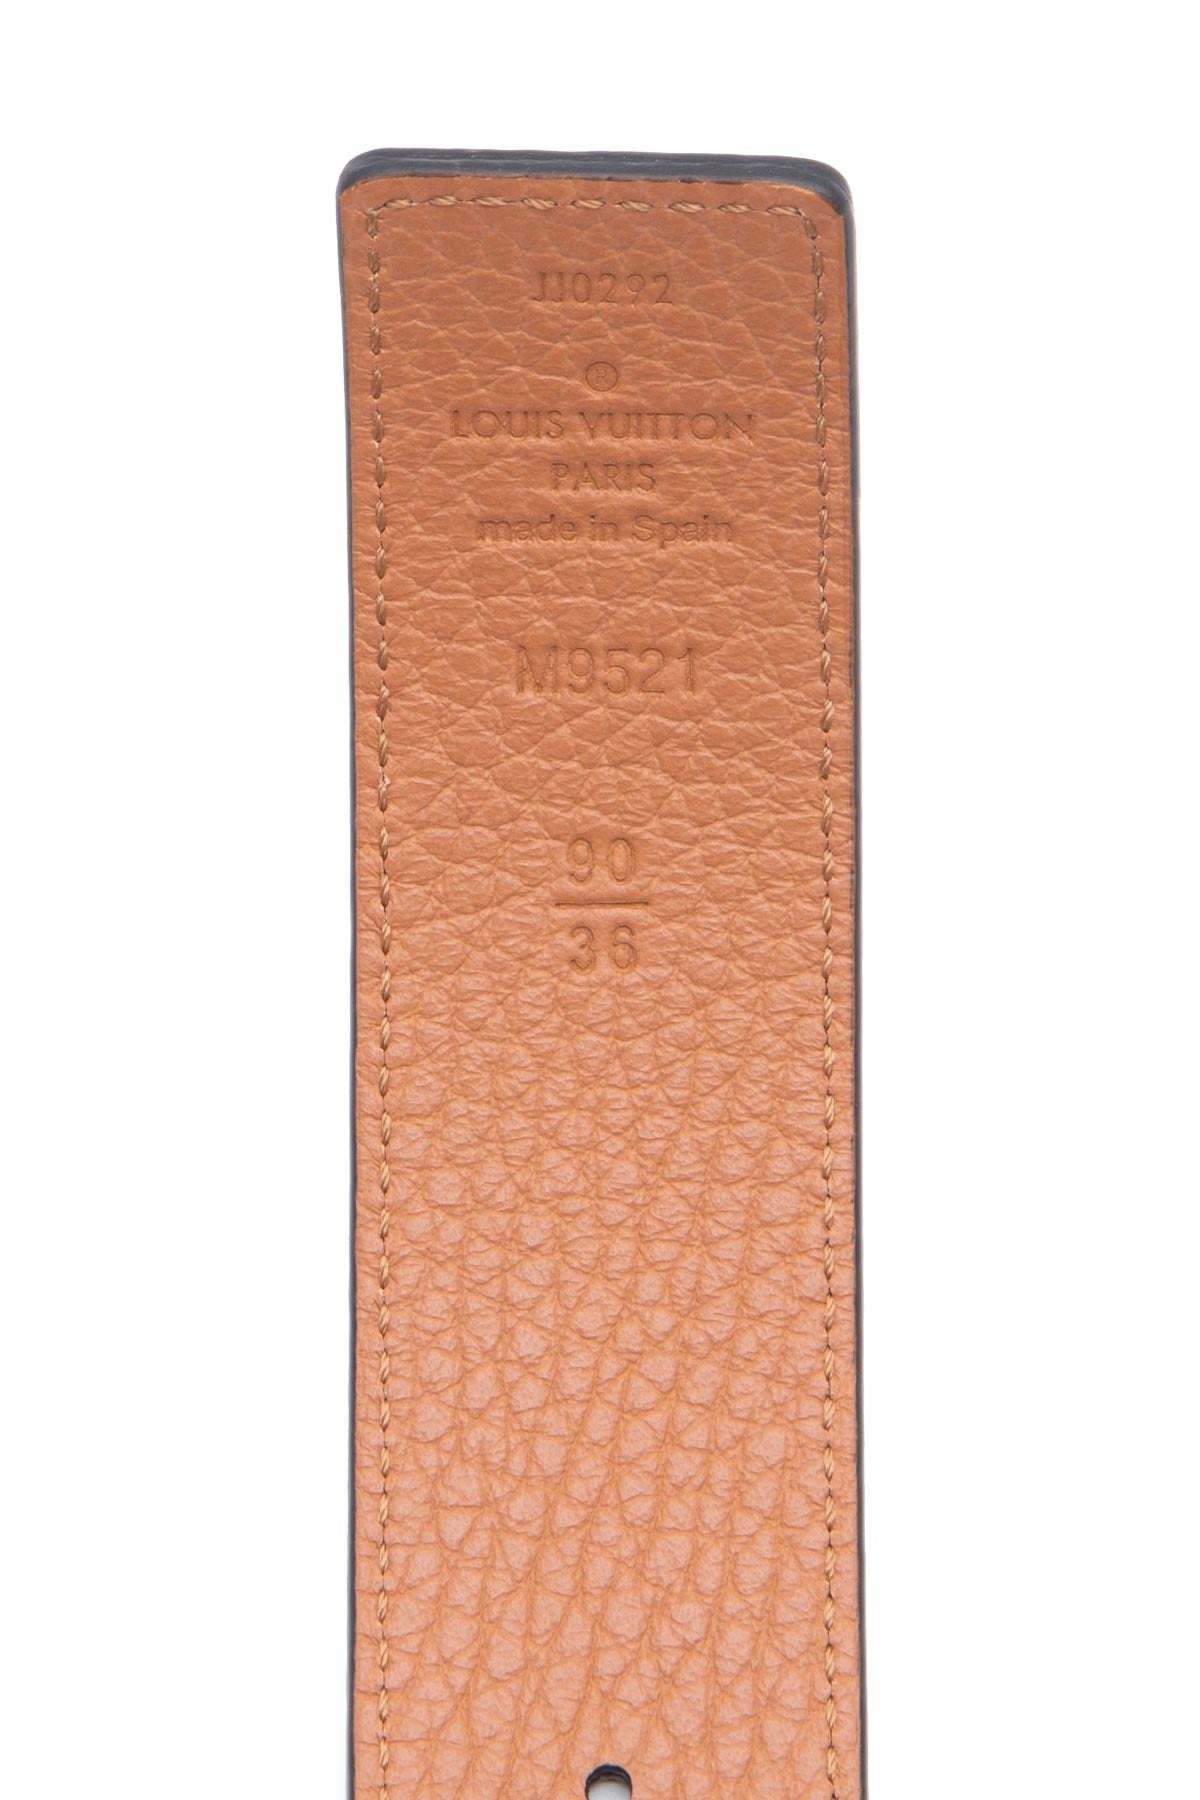 Louis Vuitton LV Initiales 40mm Reversible Belt - Size 42